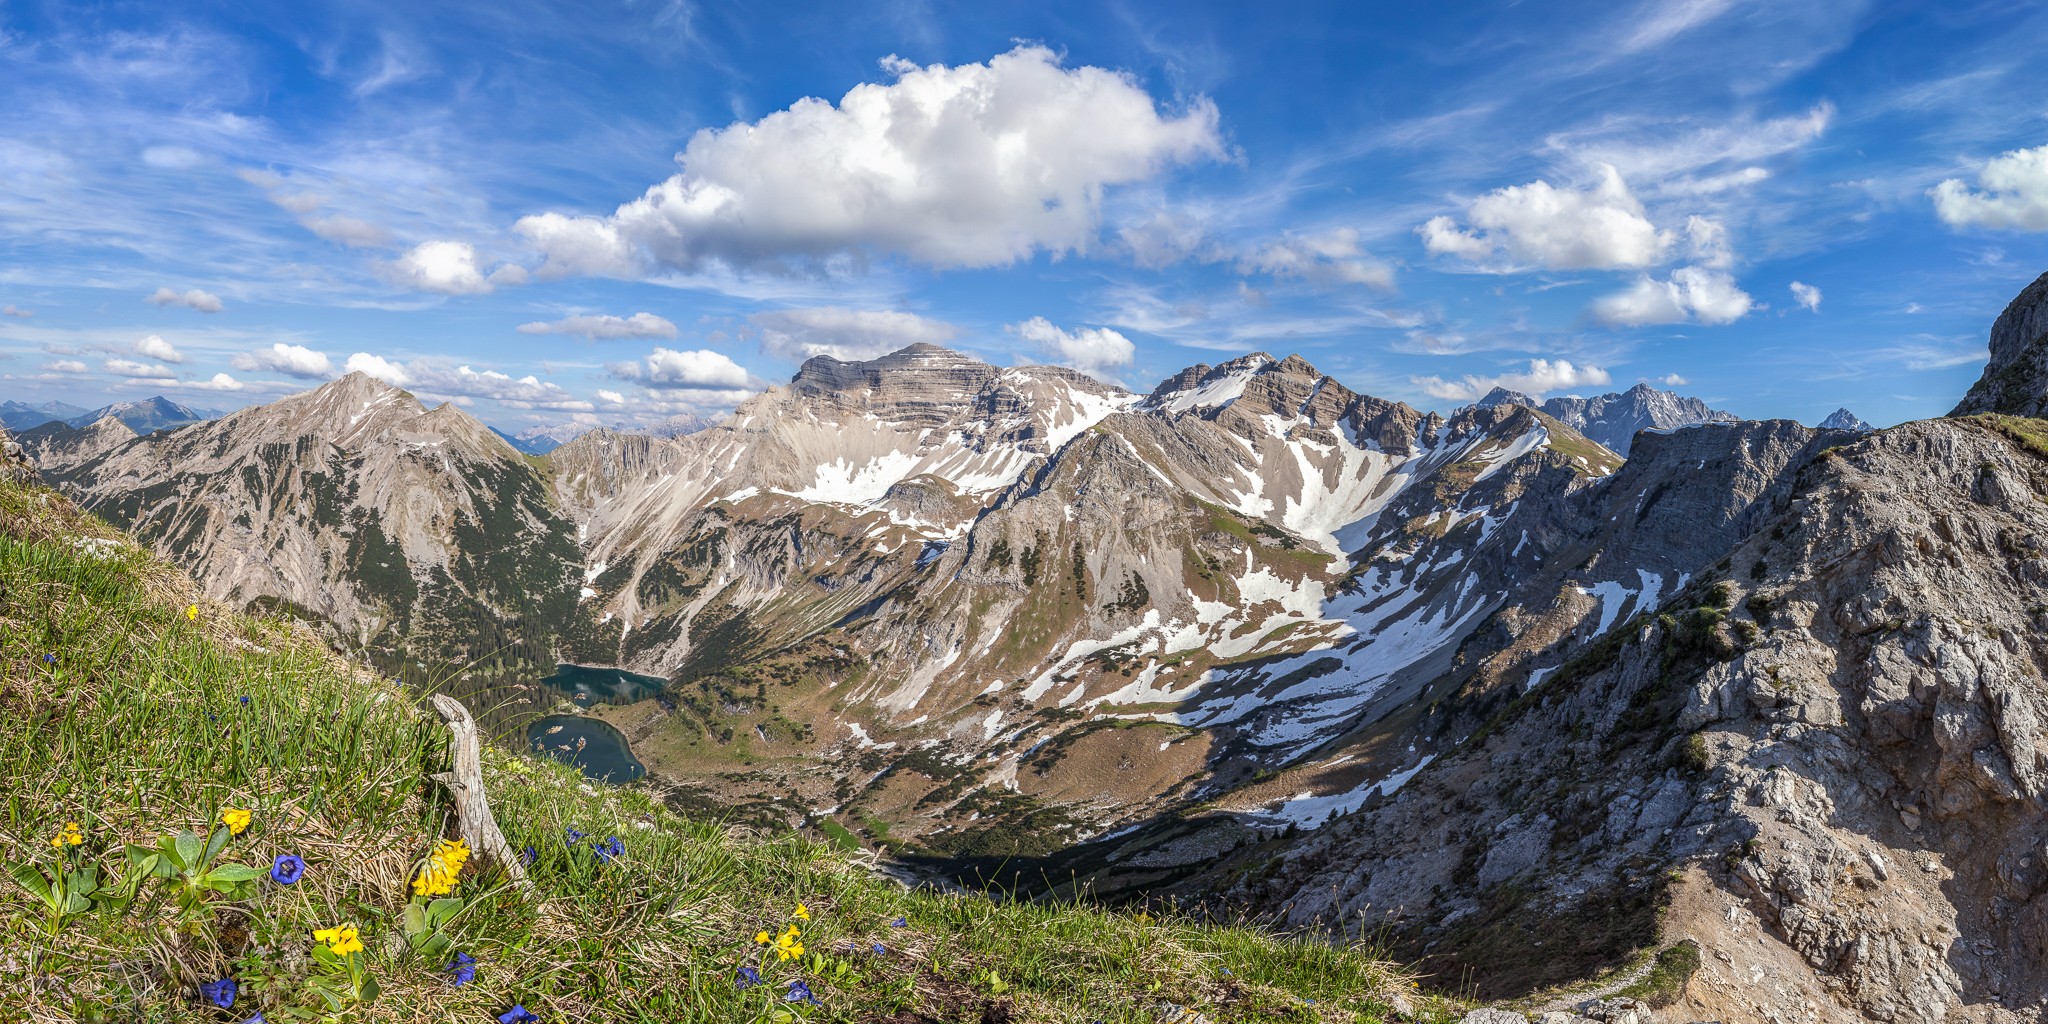 Bergfrühling in der Alpenwelt Karwendel mit Wanderer. Im Vordergrund blühen bereits Enzian und Bergaurikel, an der Soiernspitze und am Feldern liegt noch Schnee.